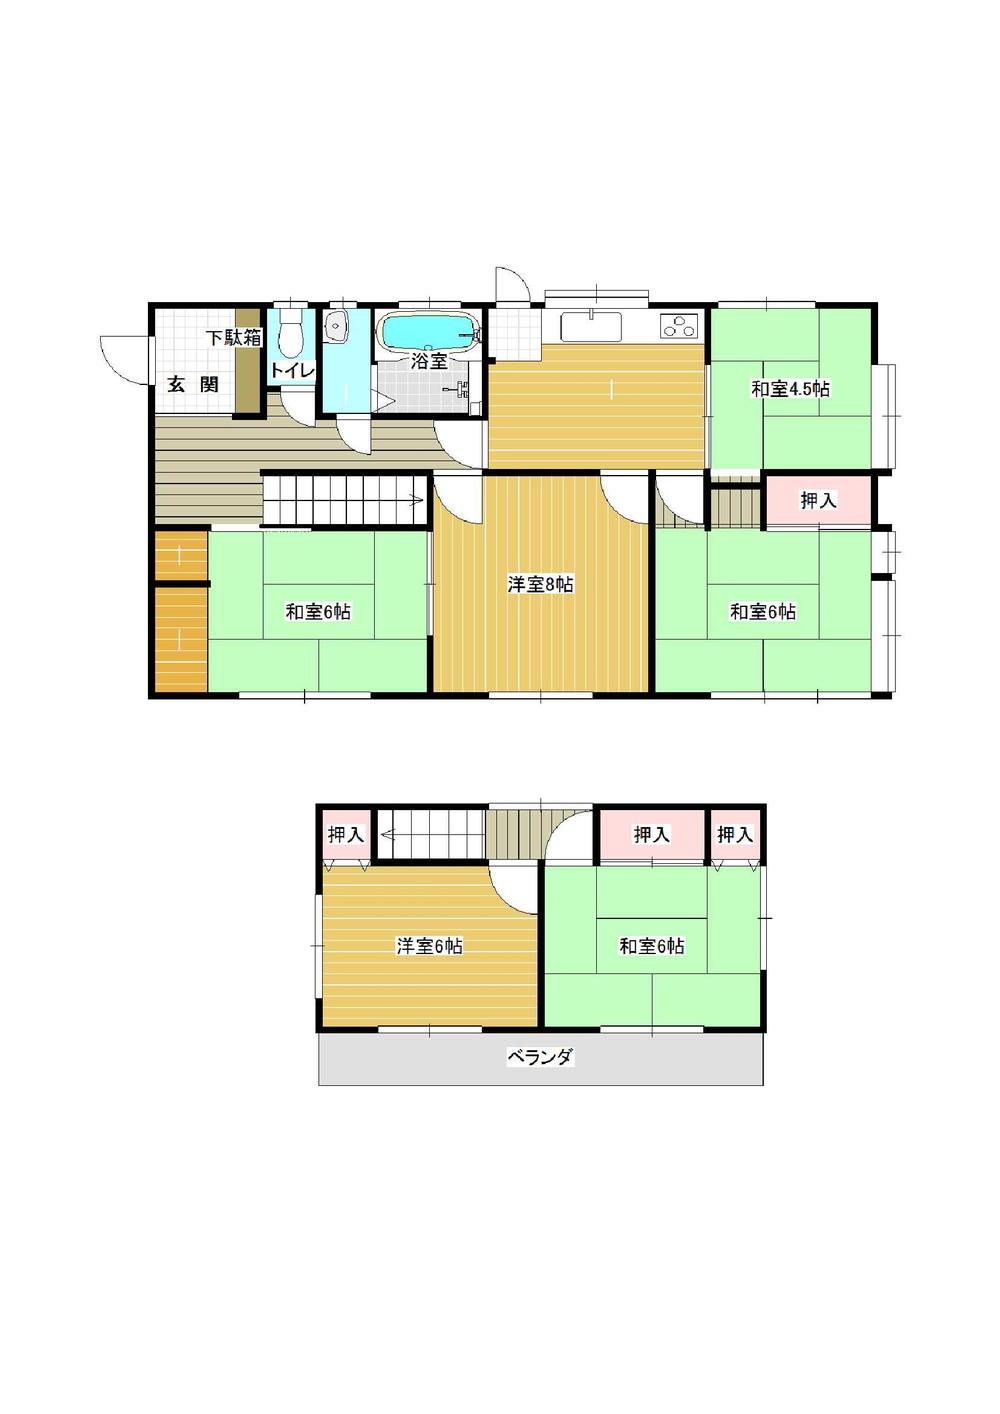 Floor plan. 15.8 million yen, 6DK, Land area 200.75 sq m , Building area 103.77 sq m Mato